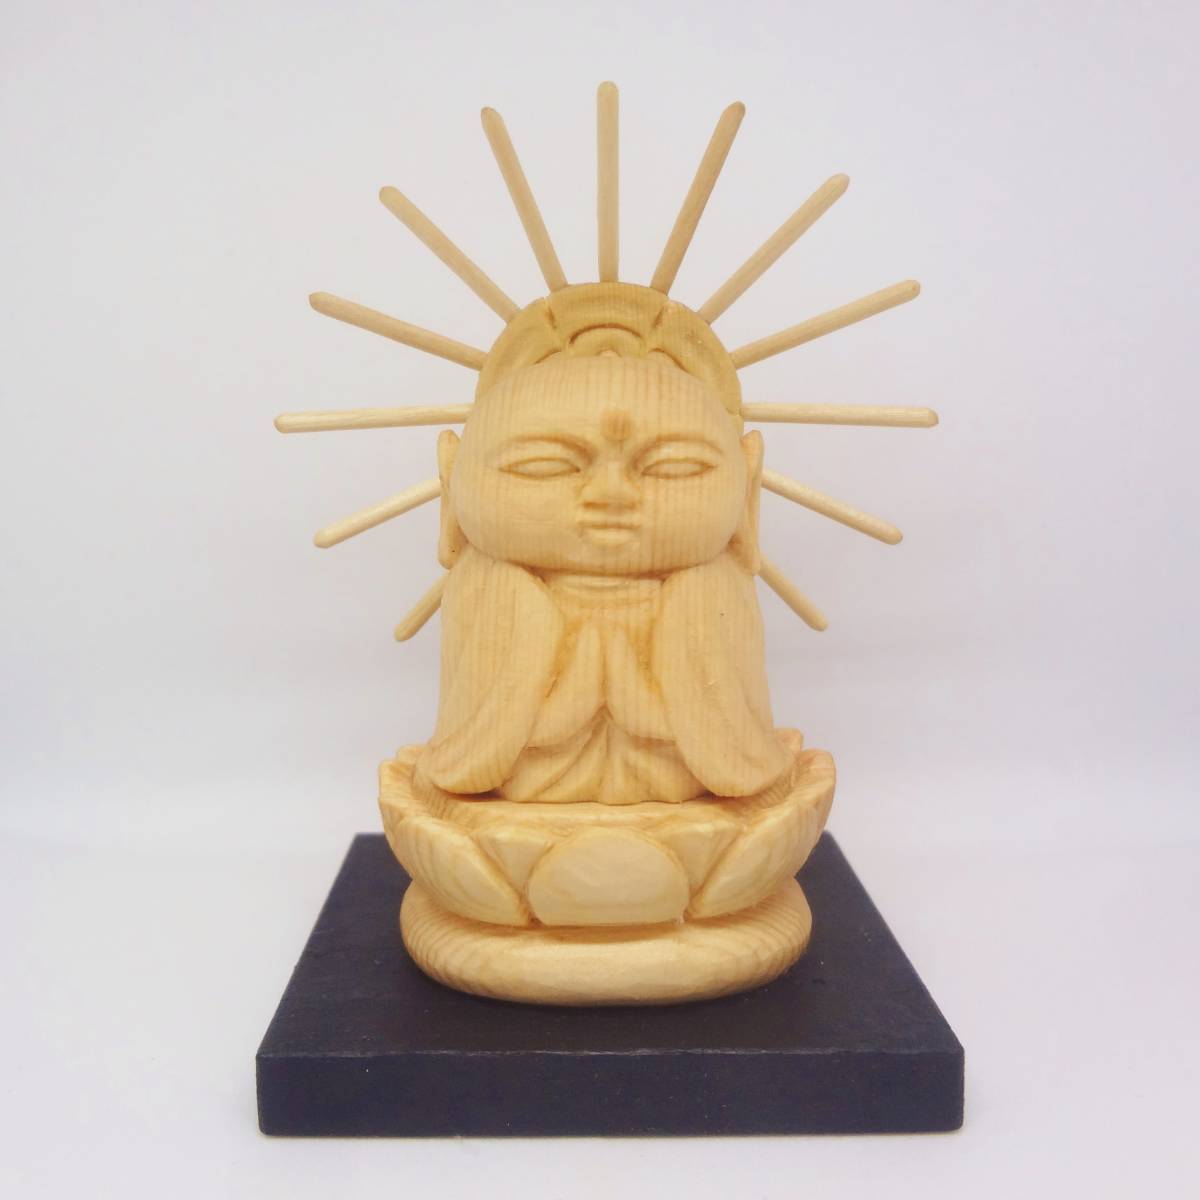 판매자의 나무 조각품, 작은 부처님 동상 Jizo Bodhisattva 원래 수제 Jizo 부처님 동상 조각, 조각품, 물체, 동양 조각, 불상